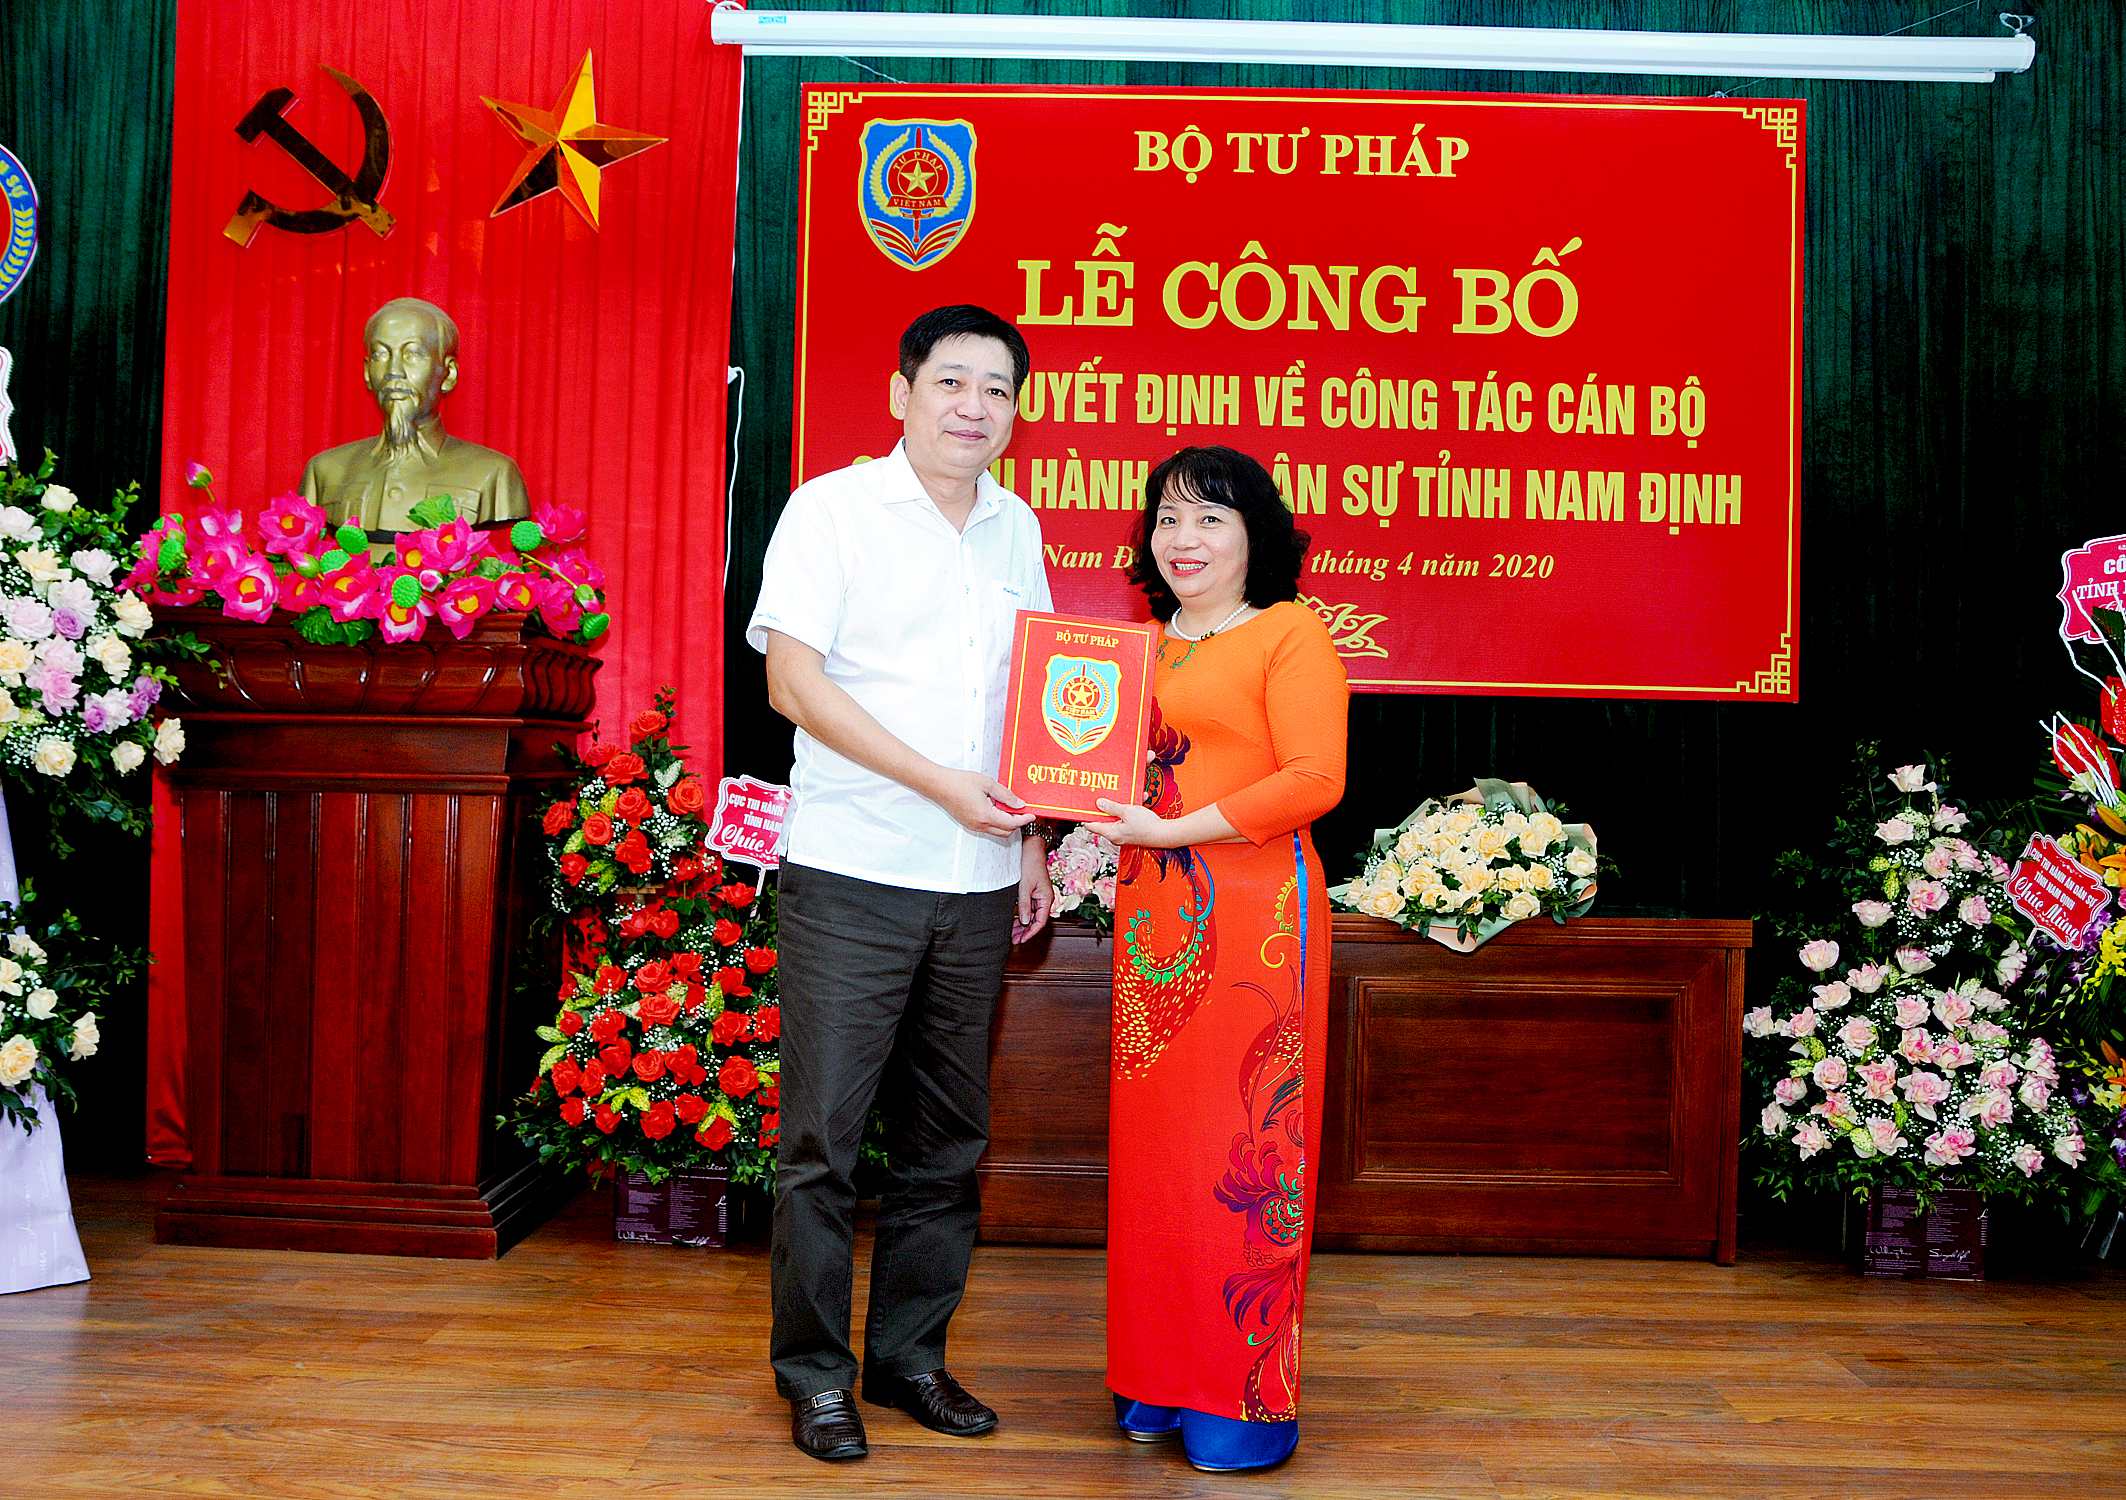 Lễ công bố các quyết định về công tác cán bộ Cục Thi hành án dân sự tỉnh Nam Định